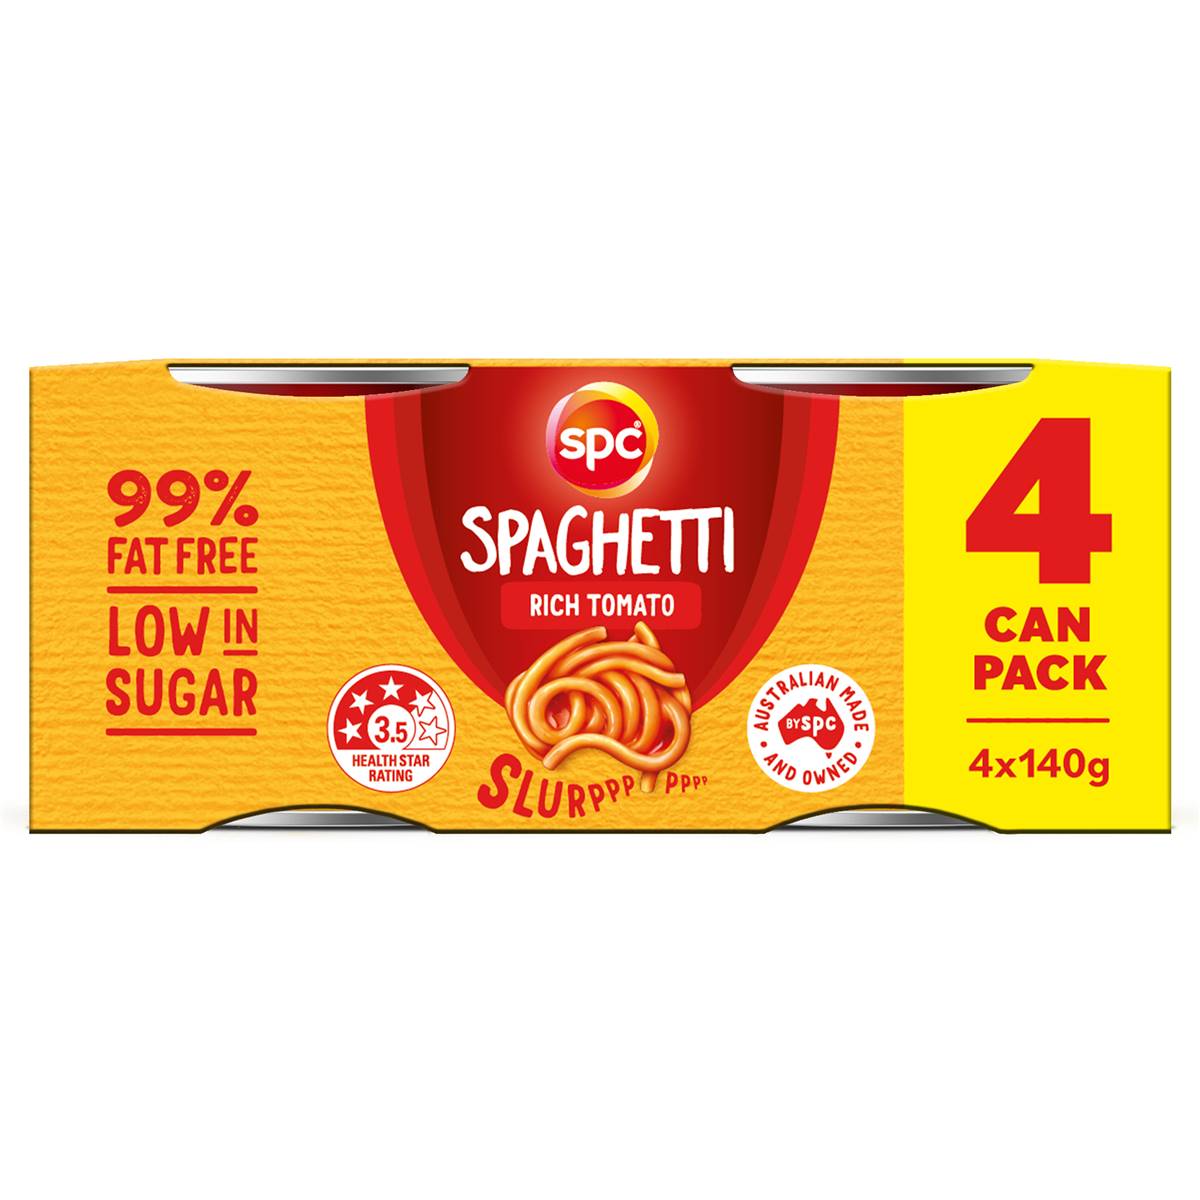 Calories in Spc Spaghetti Rich Tomato